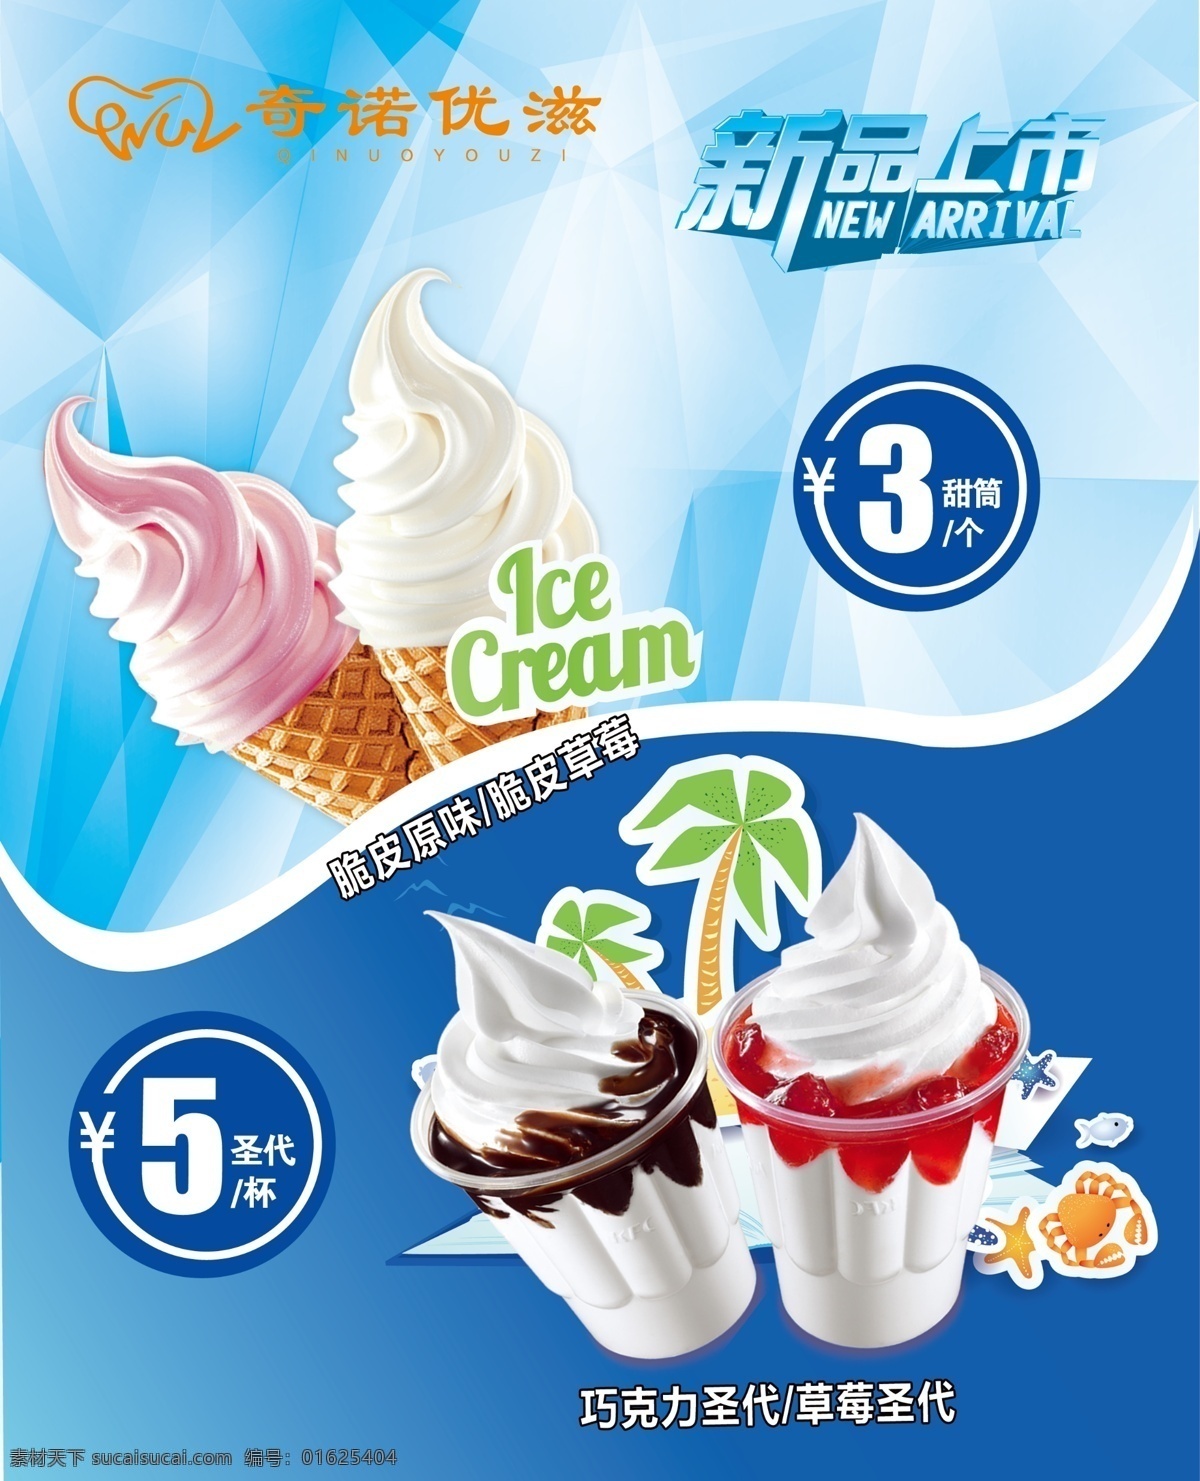 圣代 冰淇淋 冷饮 新品上市 冰糕 展板模板